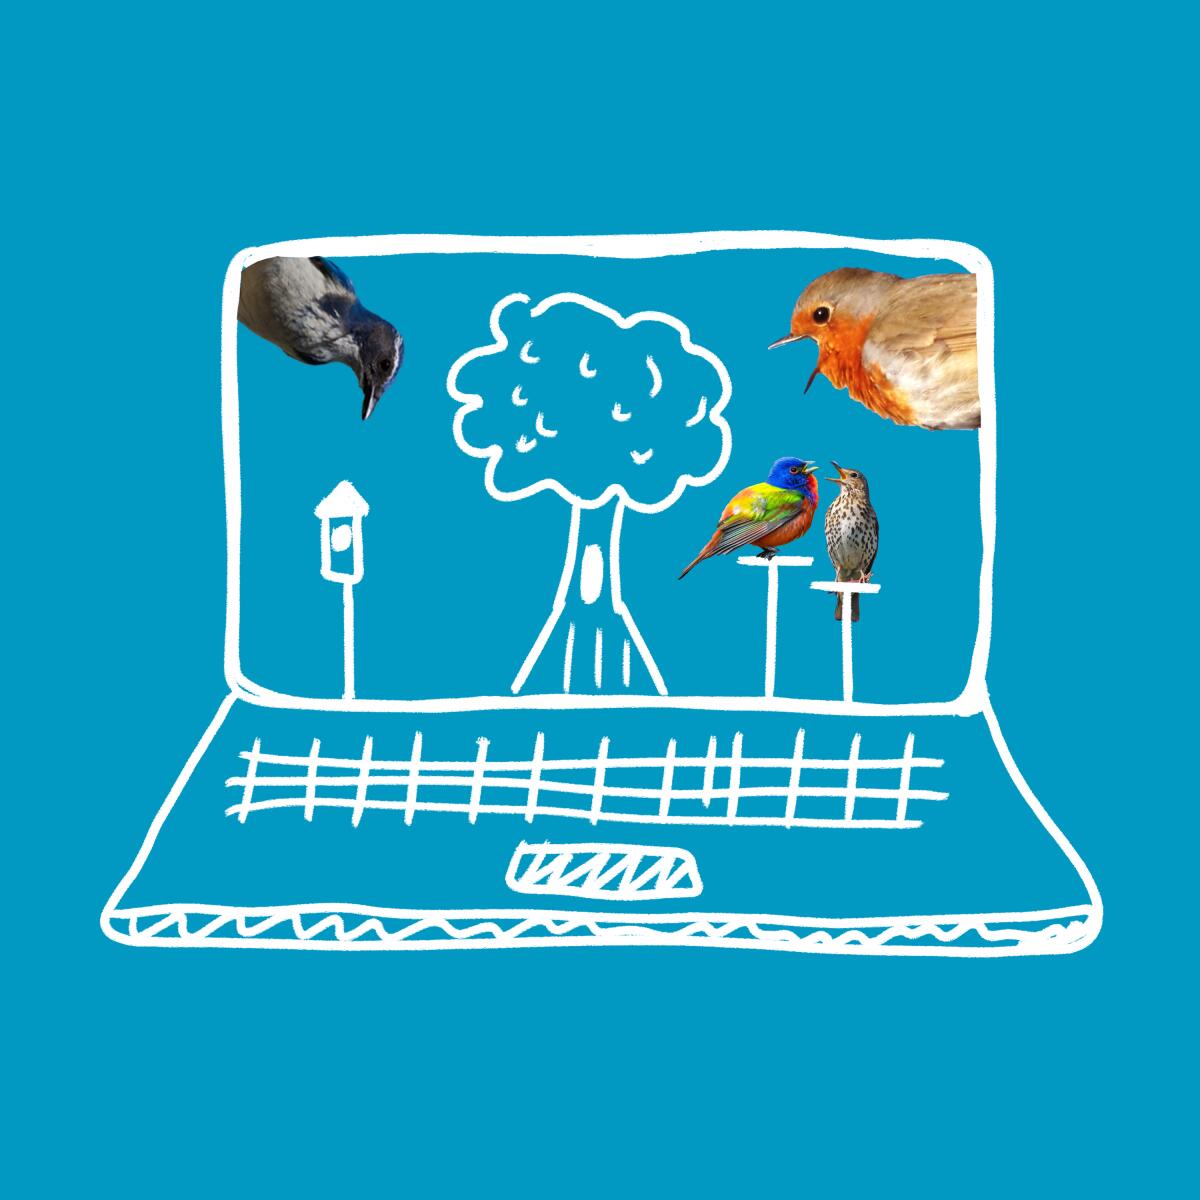 Birds on a laptop